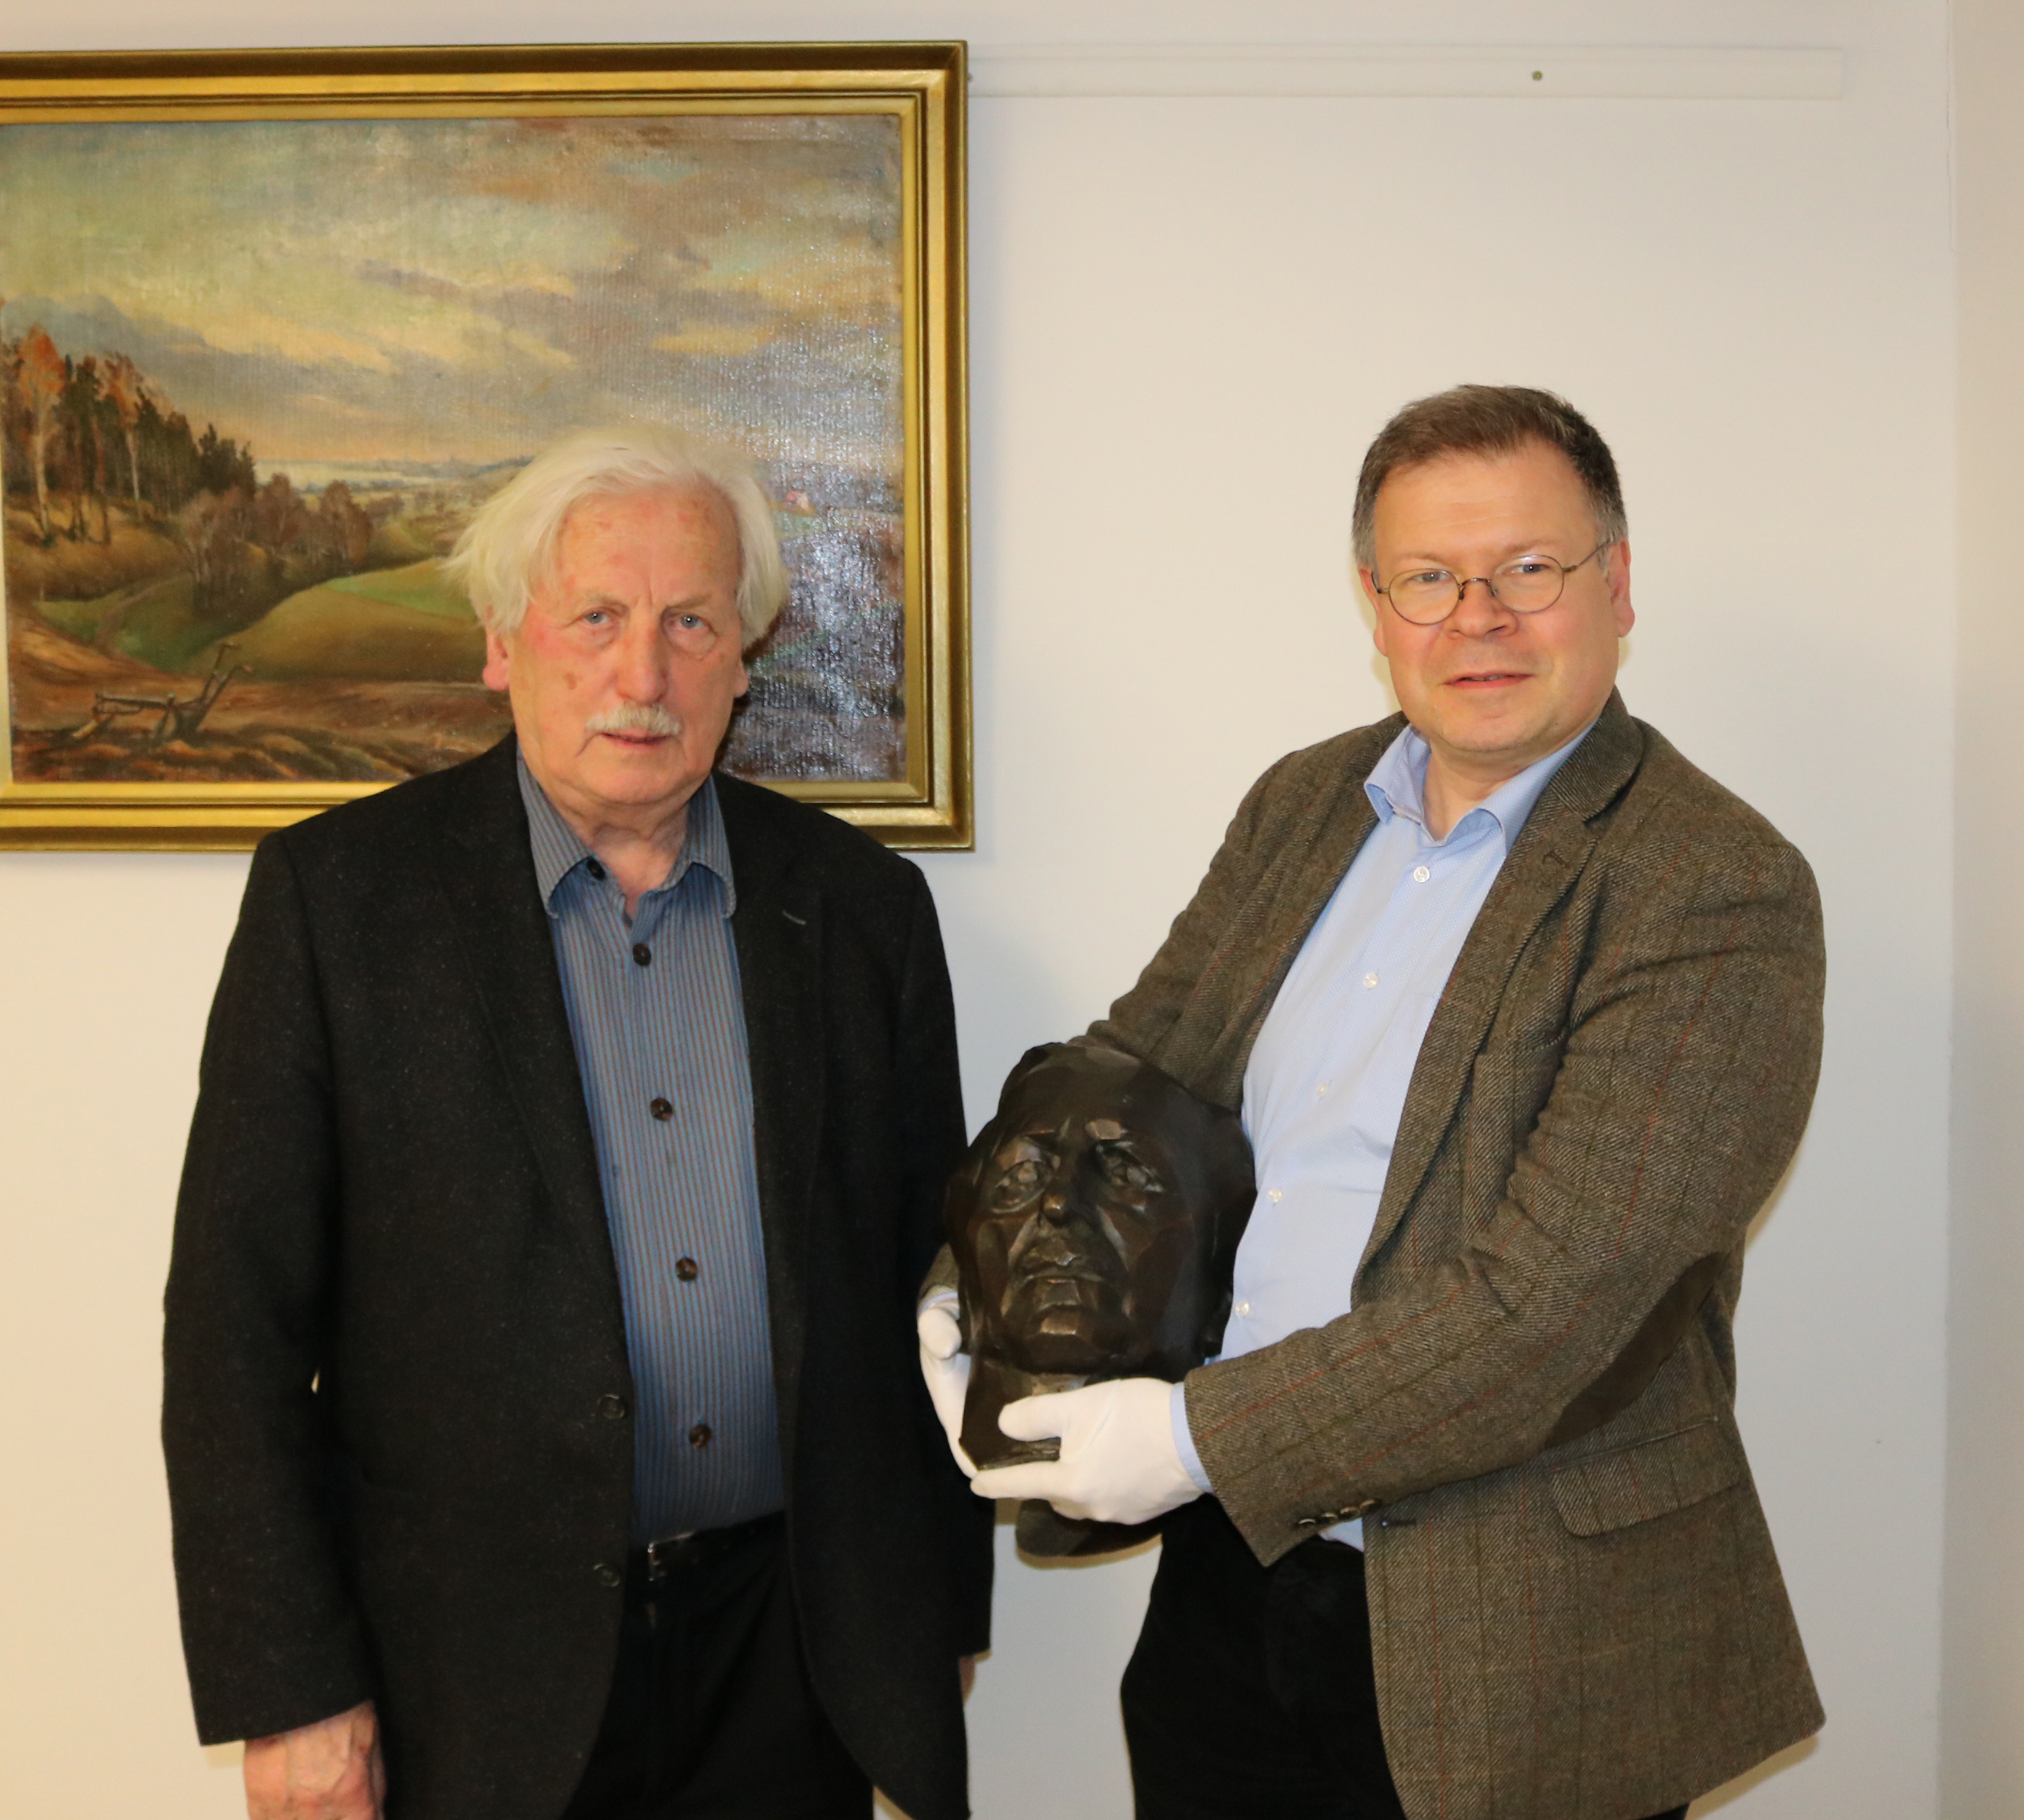 Arno Surminski überreicht die Büste unserem Museumsdirektor Dr. Joachim Mähnert